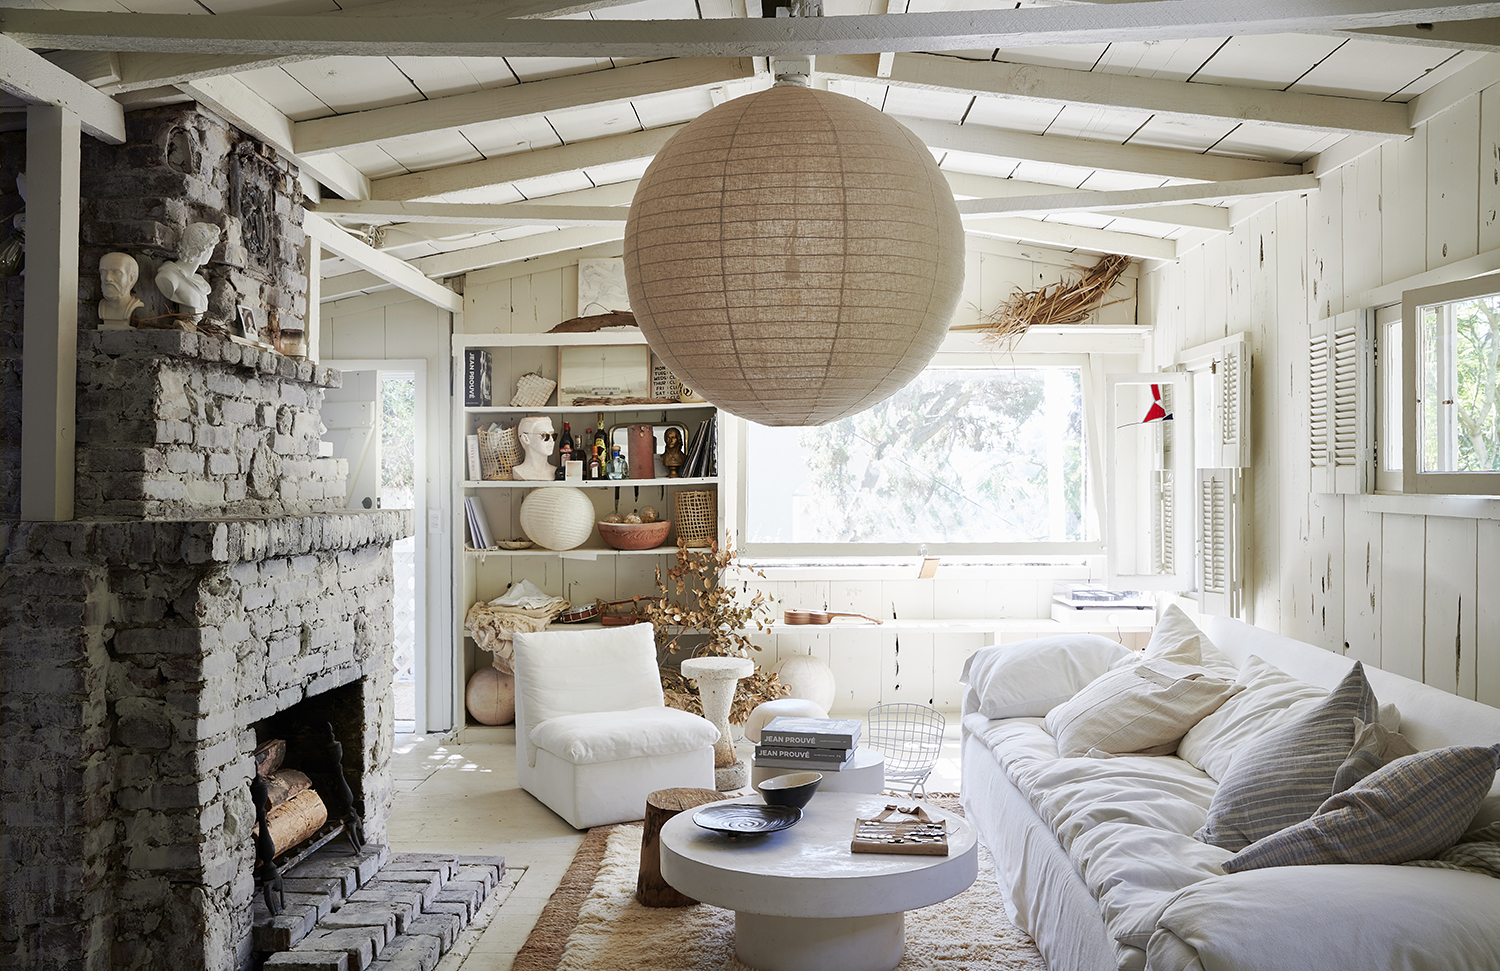 Gemidos Odiseo Pendiente Farmhouse living room ideas - design, decor and color advice | Livingetc